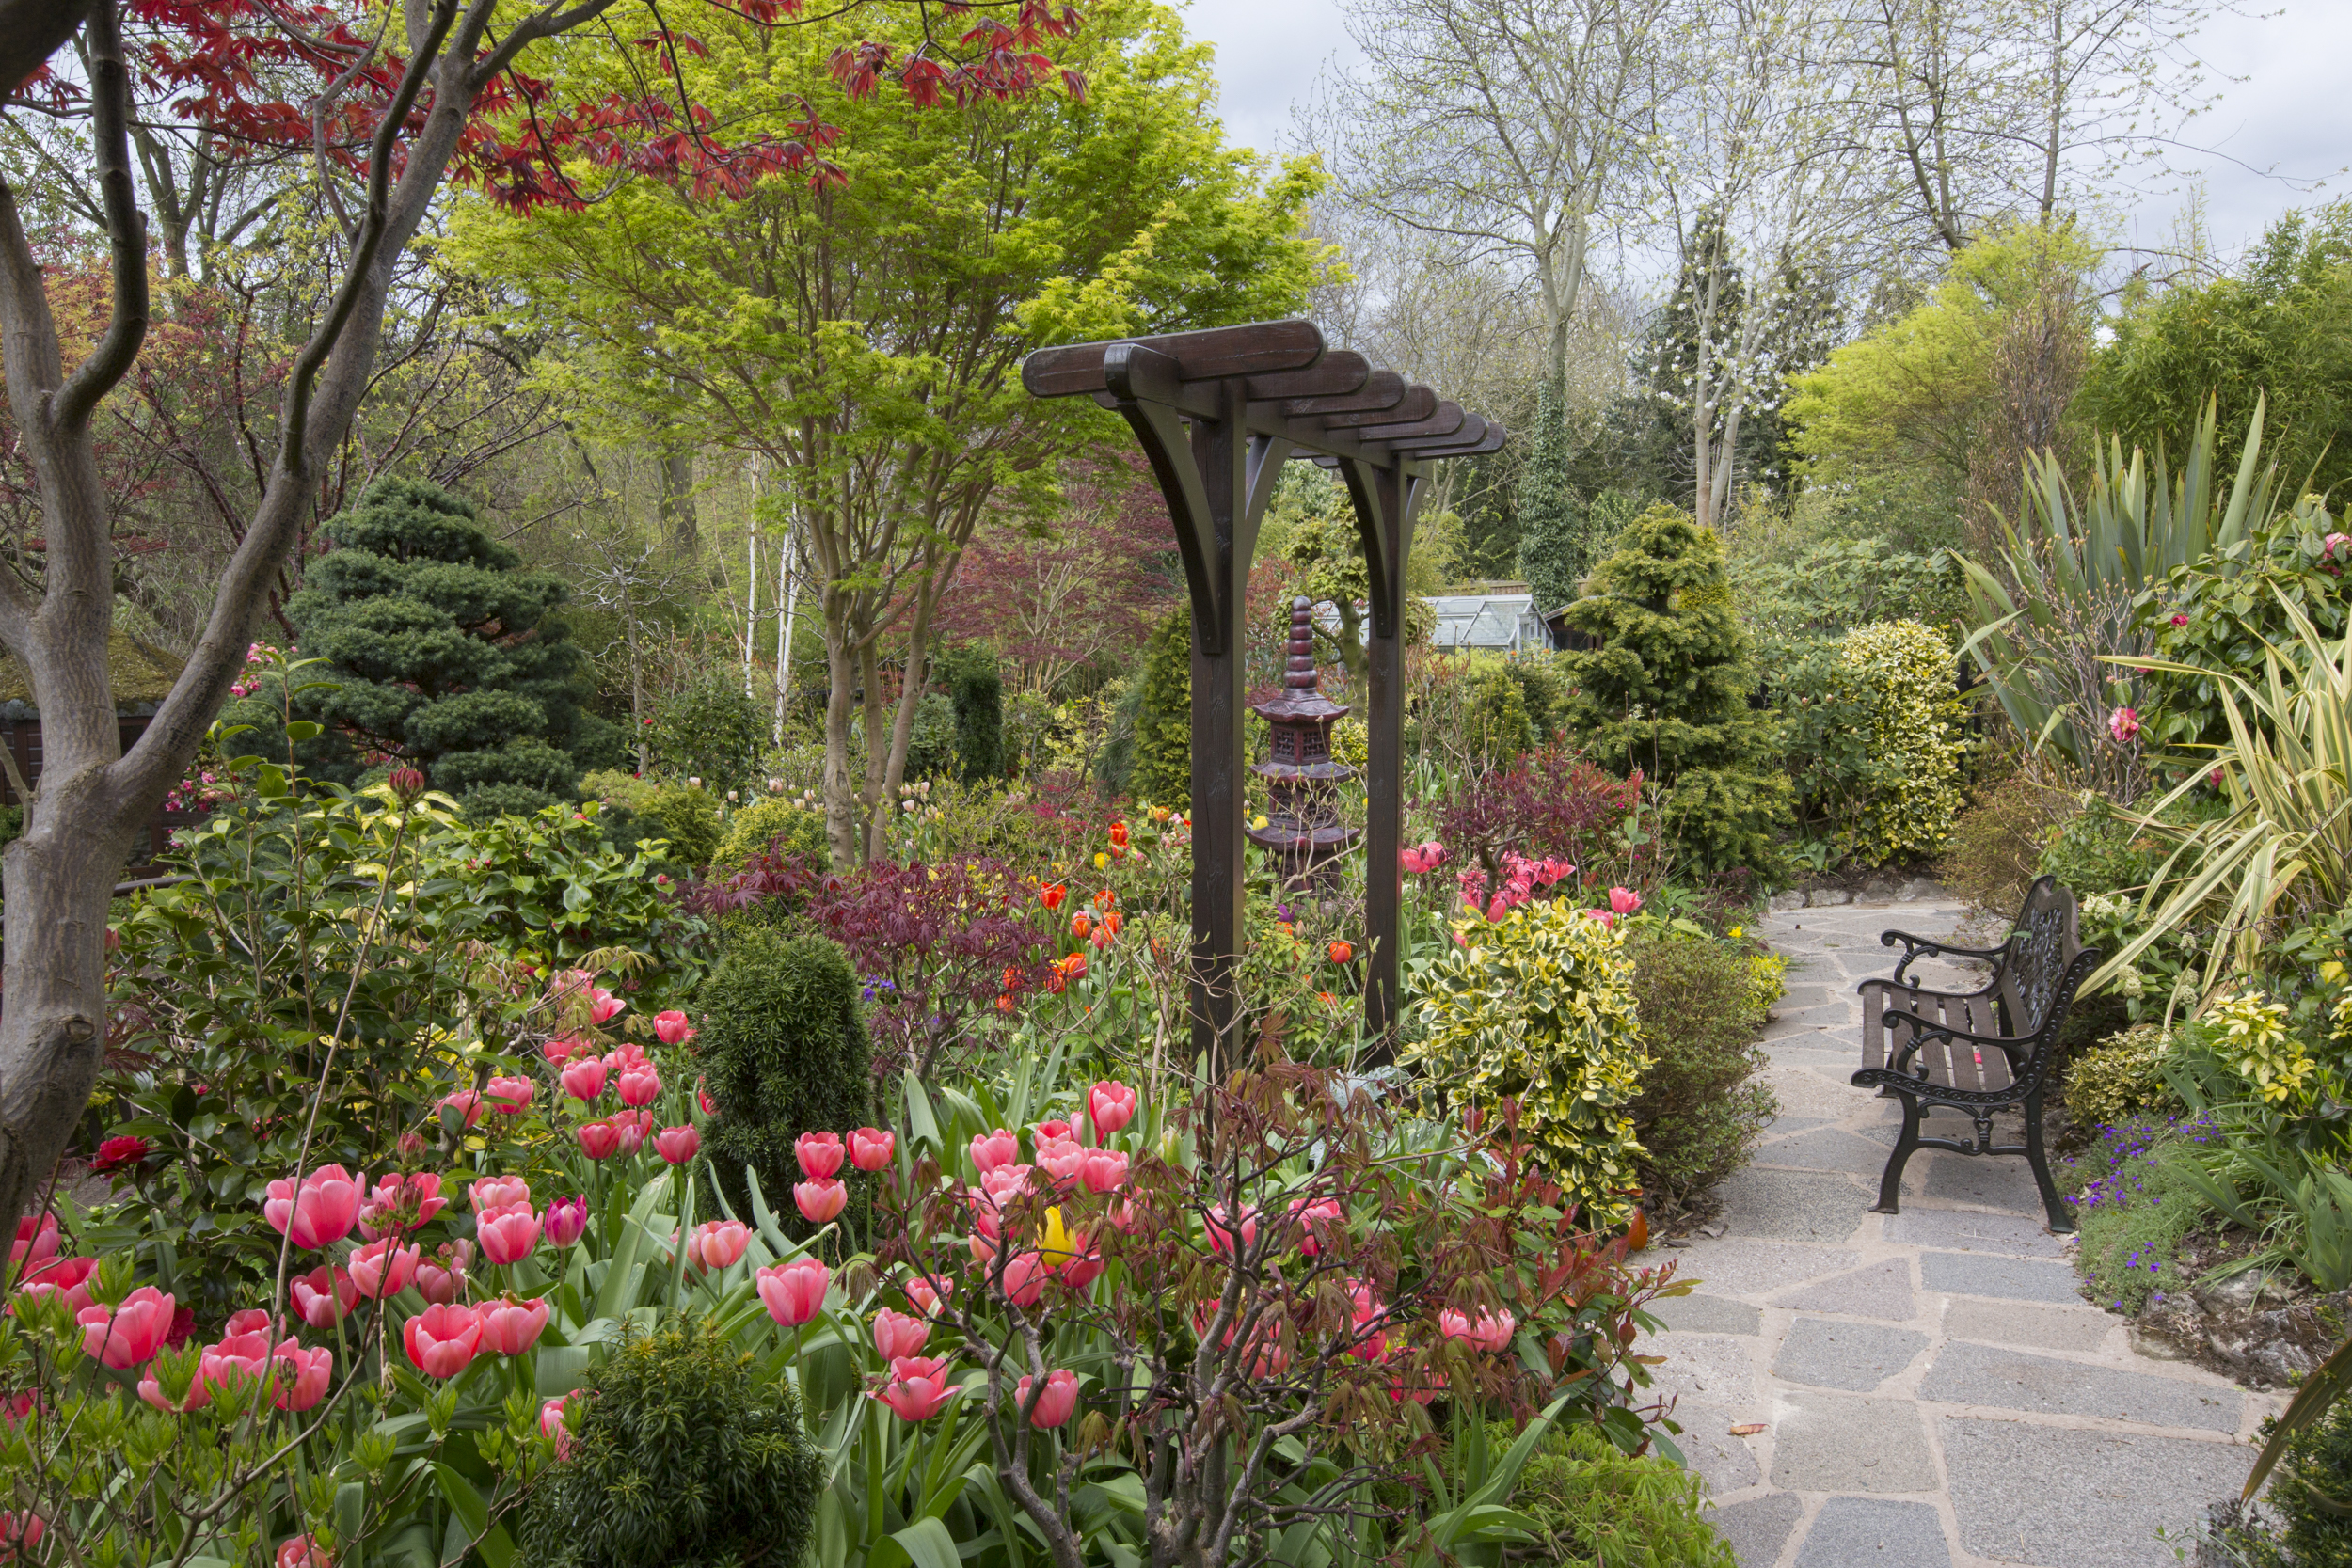 Телефон сады 8. Сад Хью Гарден. Ландшафтный дизайнер Хью Гарден. Парк дармера Кент. Розарий в пейзажном стиле.